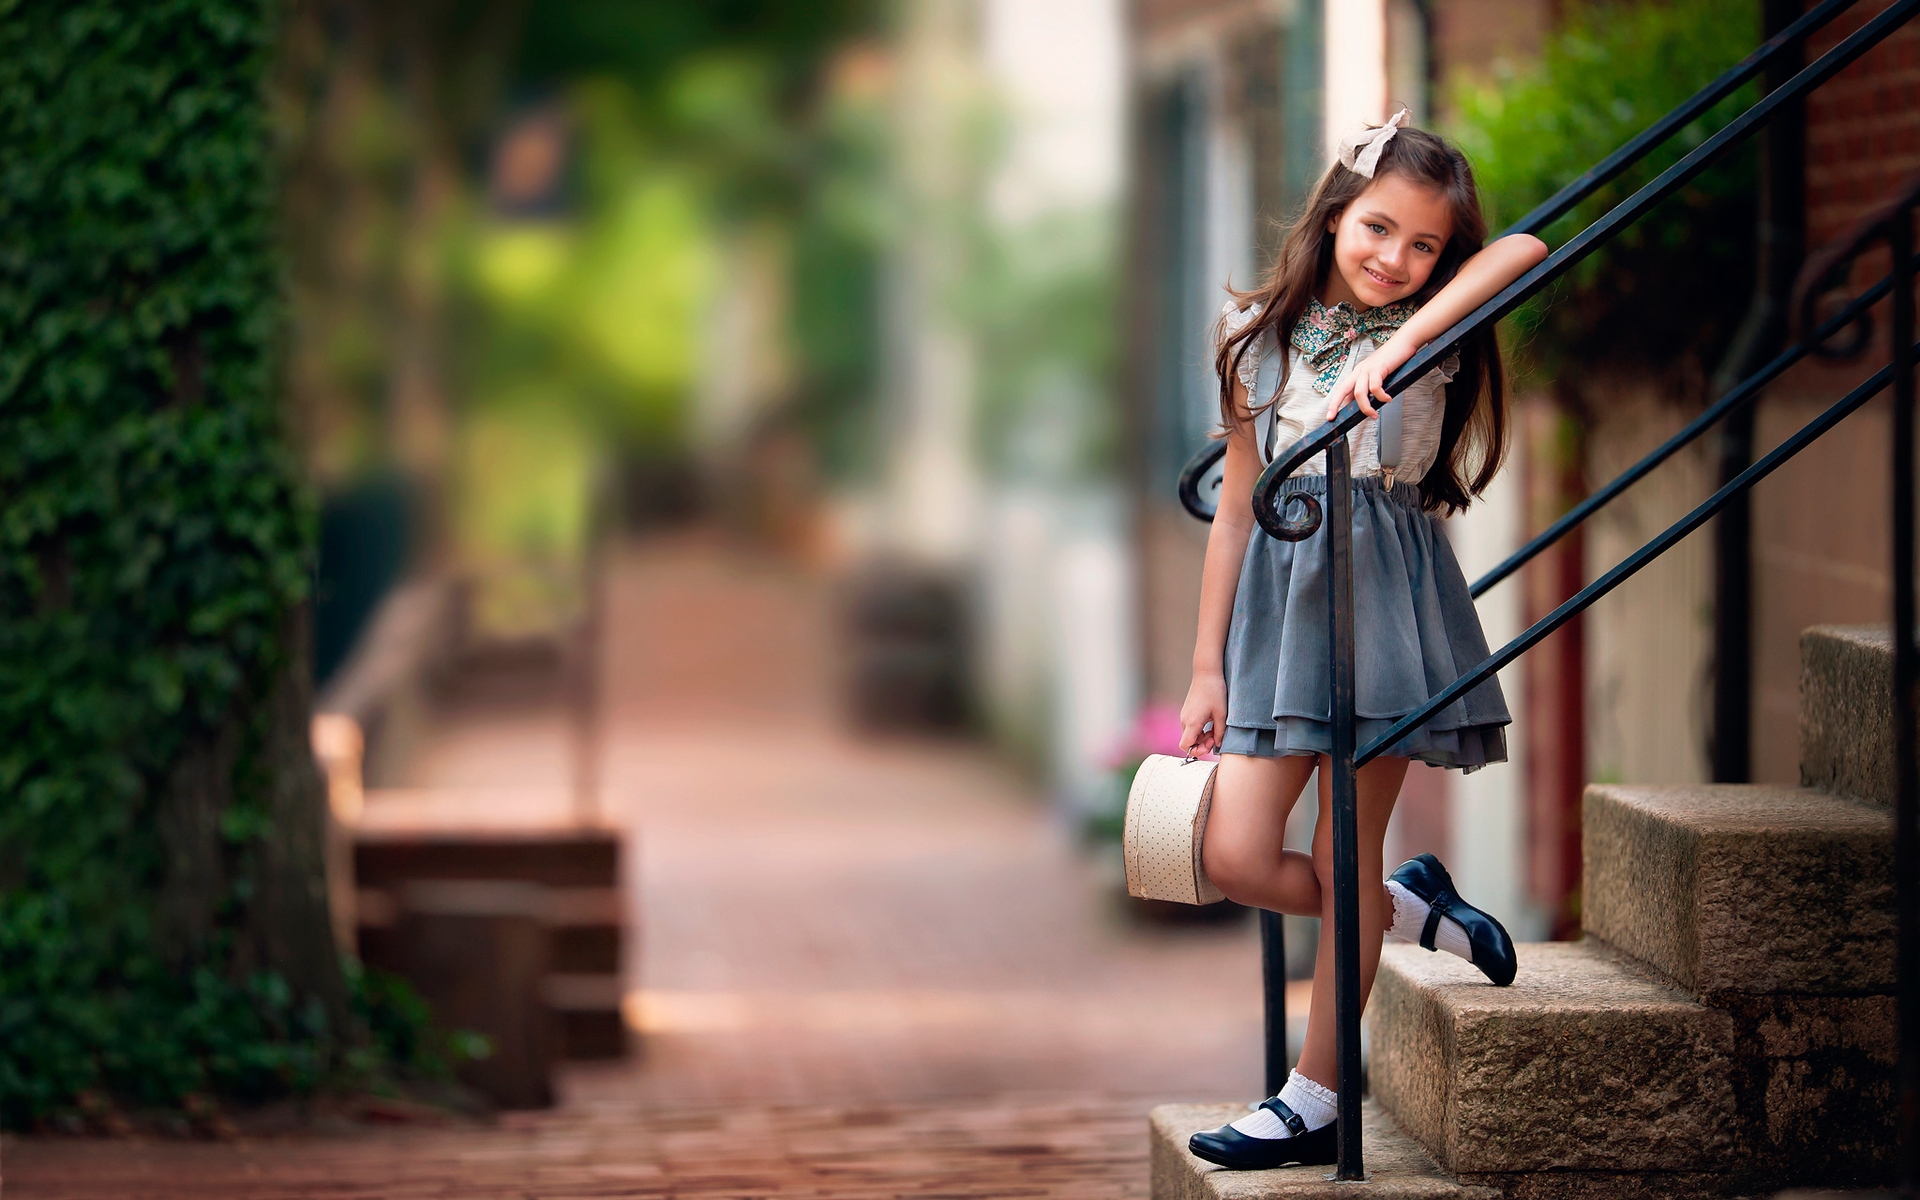 Картинка: Девочка, стоит, лестница, ступеньки, перила, улыбка, настроение, улица